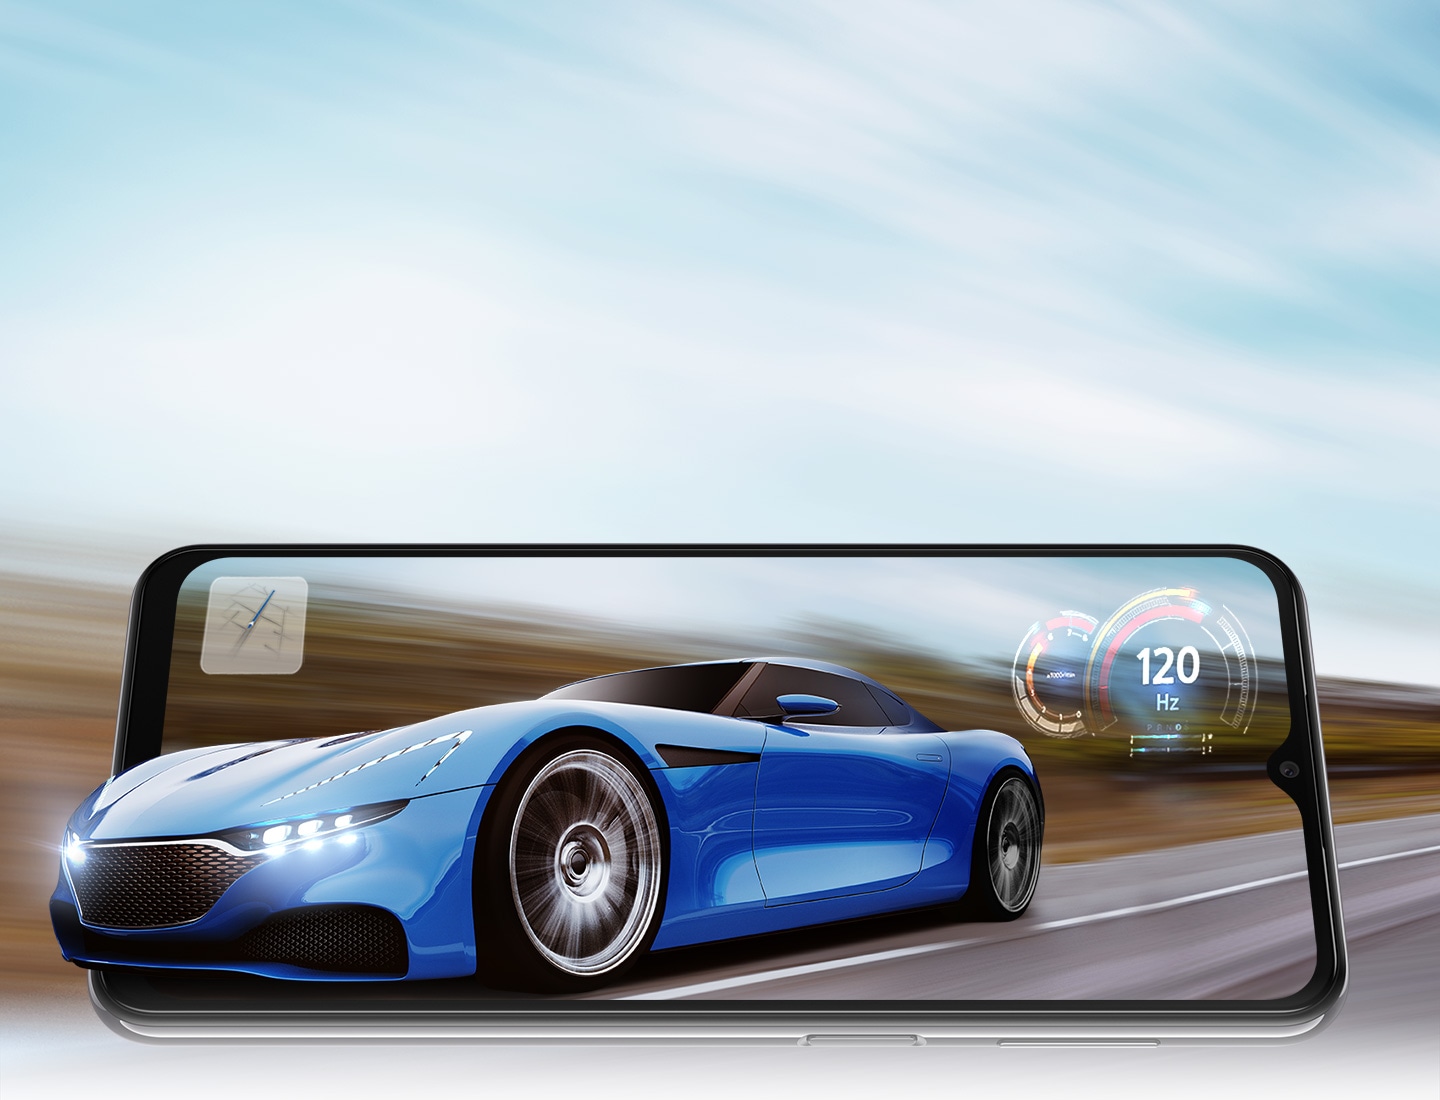 Un Galaxy A23 5G está en modo horizontal y en la pantalla aparece un auto deportivo andando por la ruta. El fondo está difuminado para indicar que circula rápido. La parte delantera del auto se extiende ligeramente más allá del marco del teléfono, como si saliera de la pantalla. También hay un mapa y un velocímetro con 120 Hz en el centro, en referencia a la rápida frecuencia de actualización del teléfono.